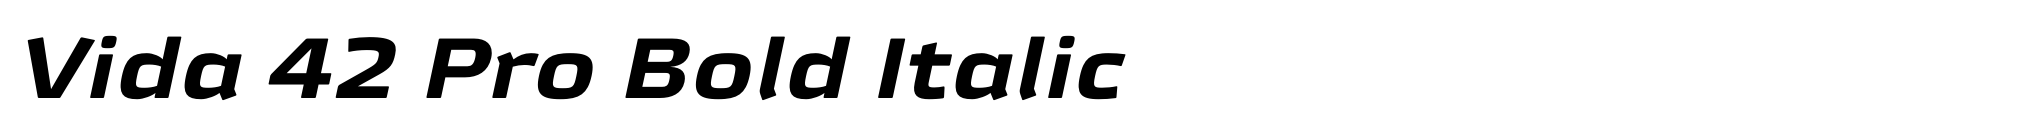 Vida 42 Pro Bold Italic image